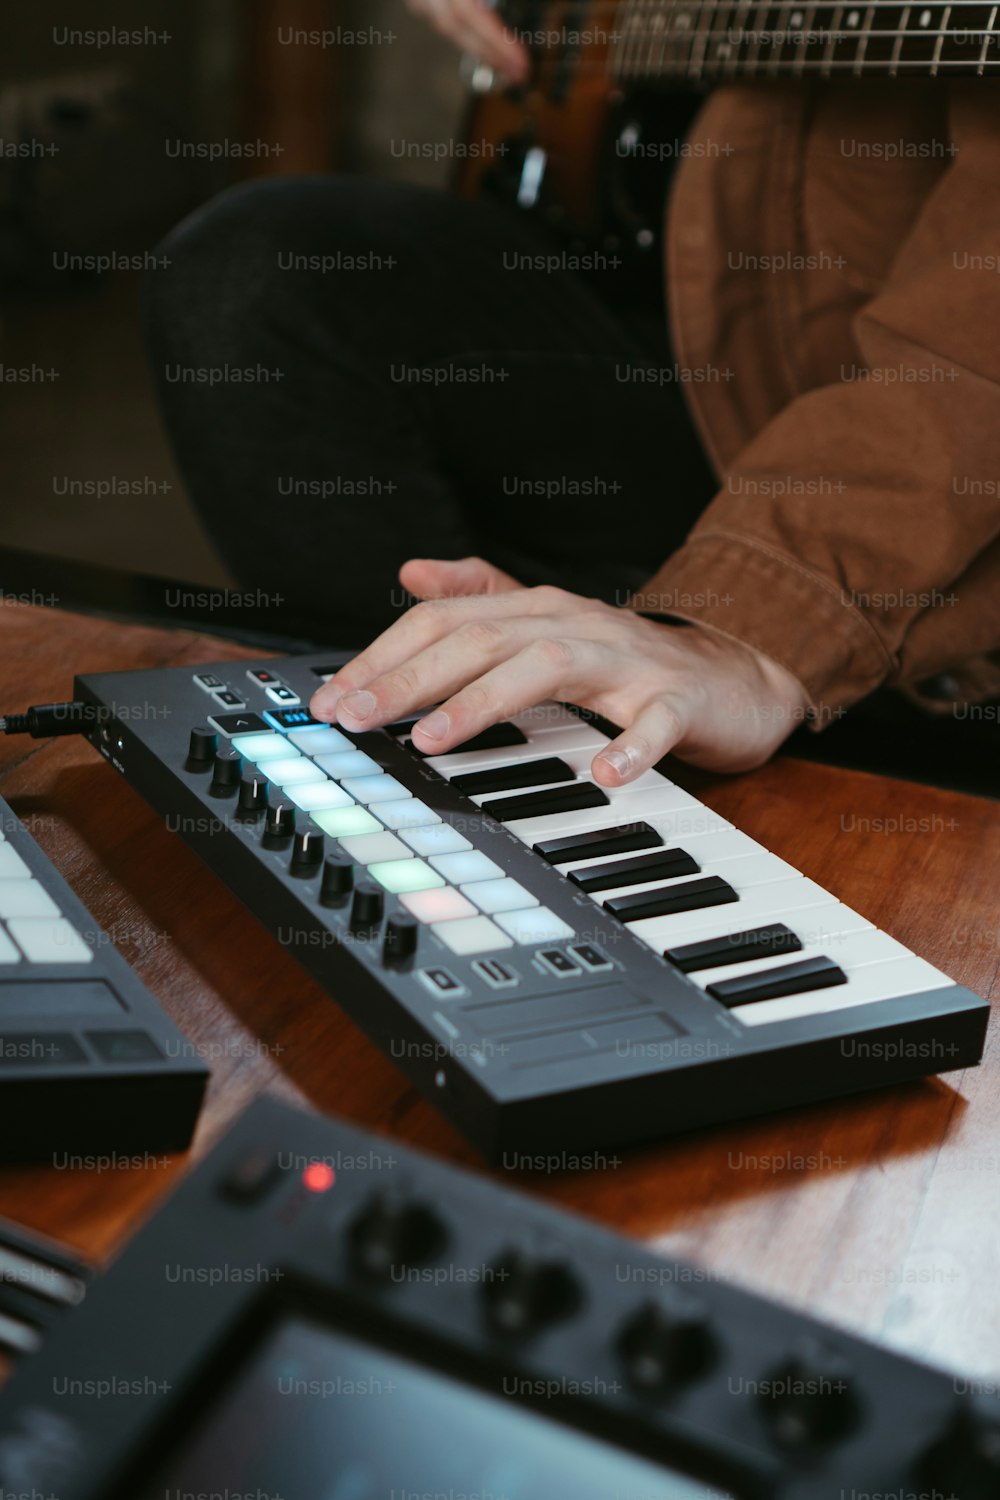 uma pessoa tocando um teclado eletrônico em uma mesa